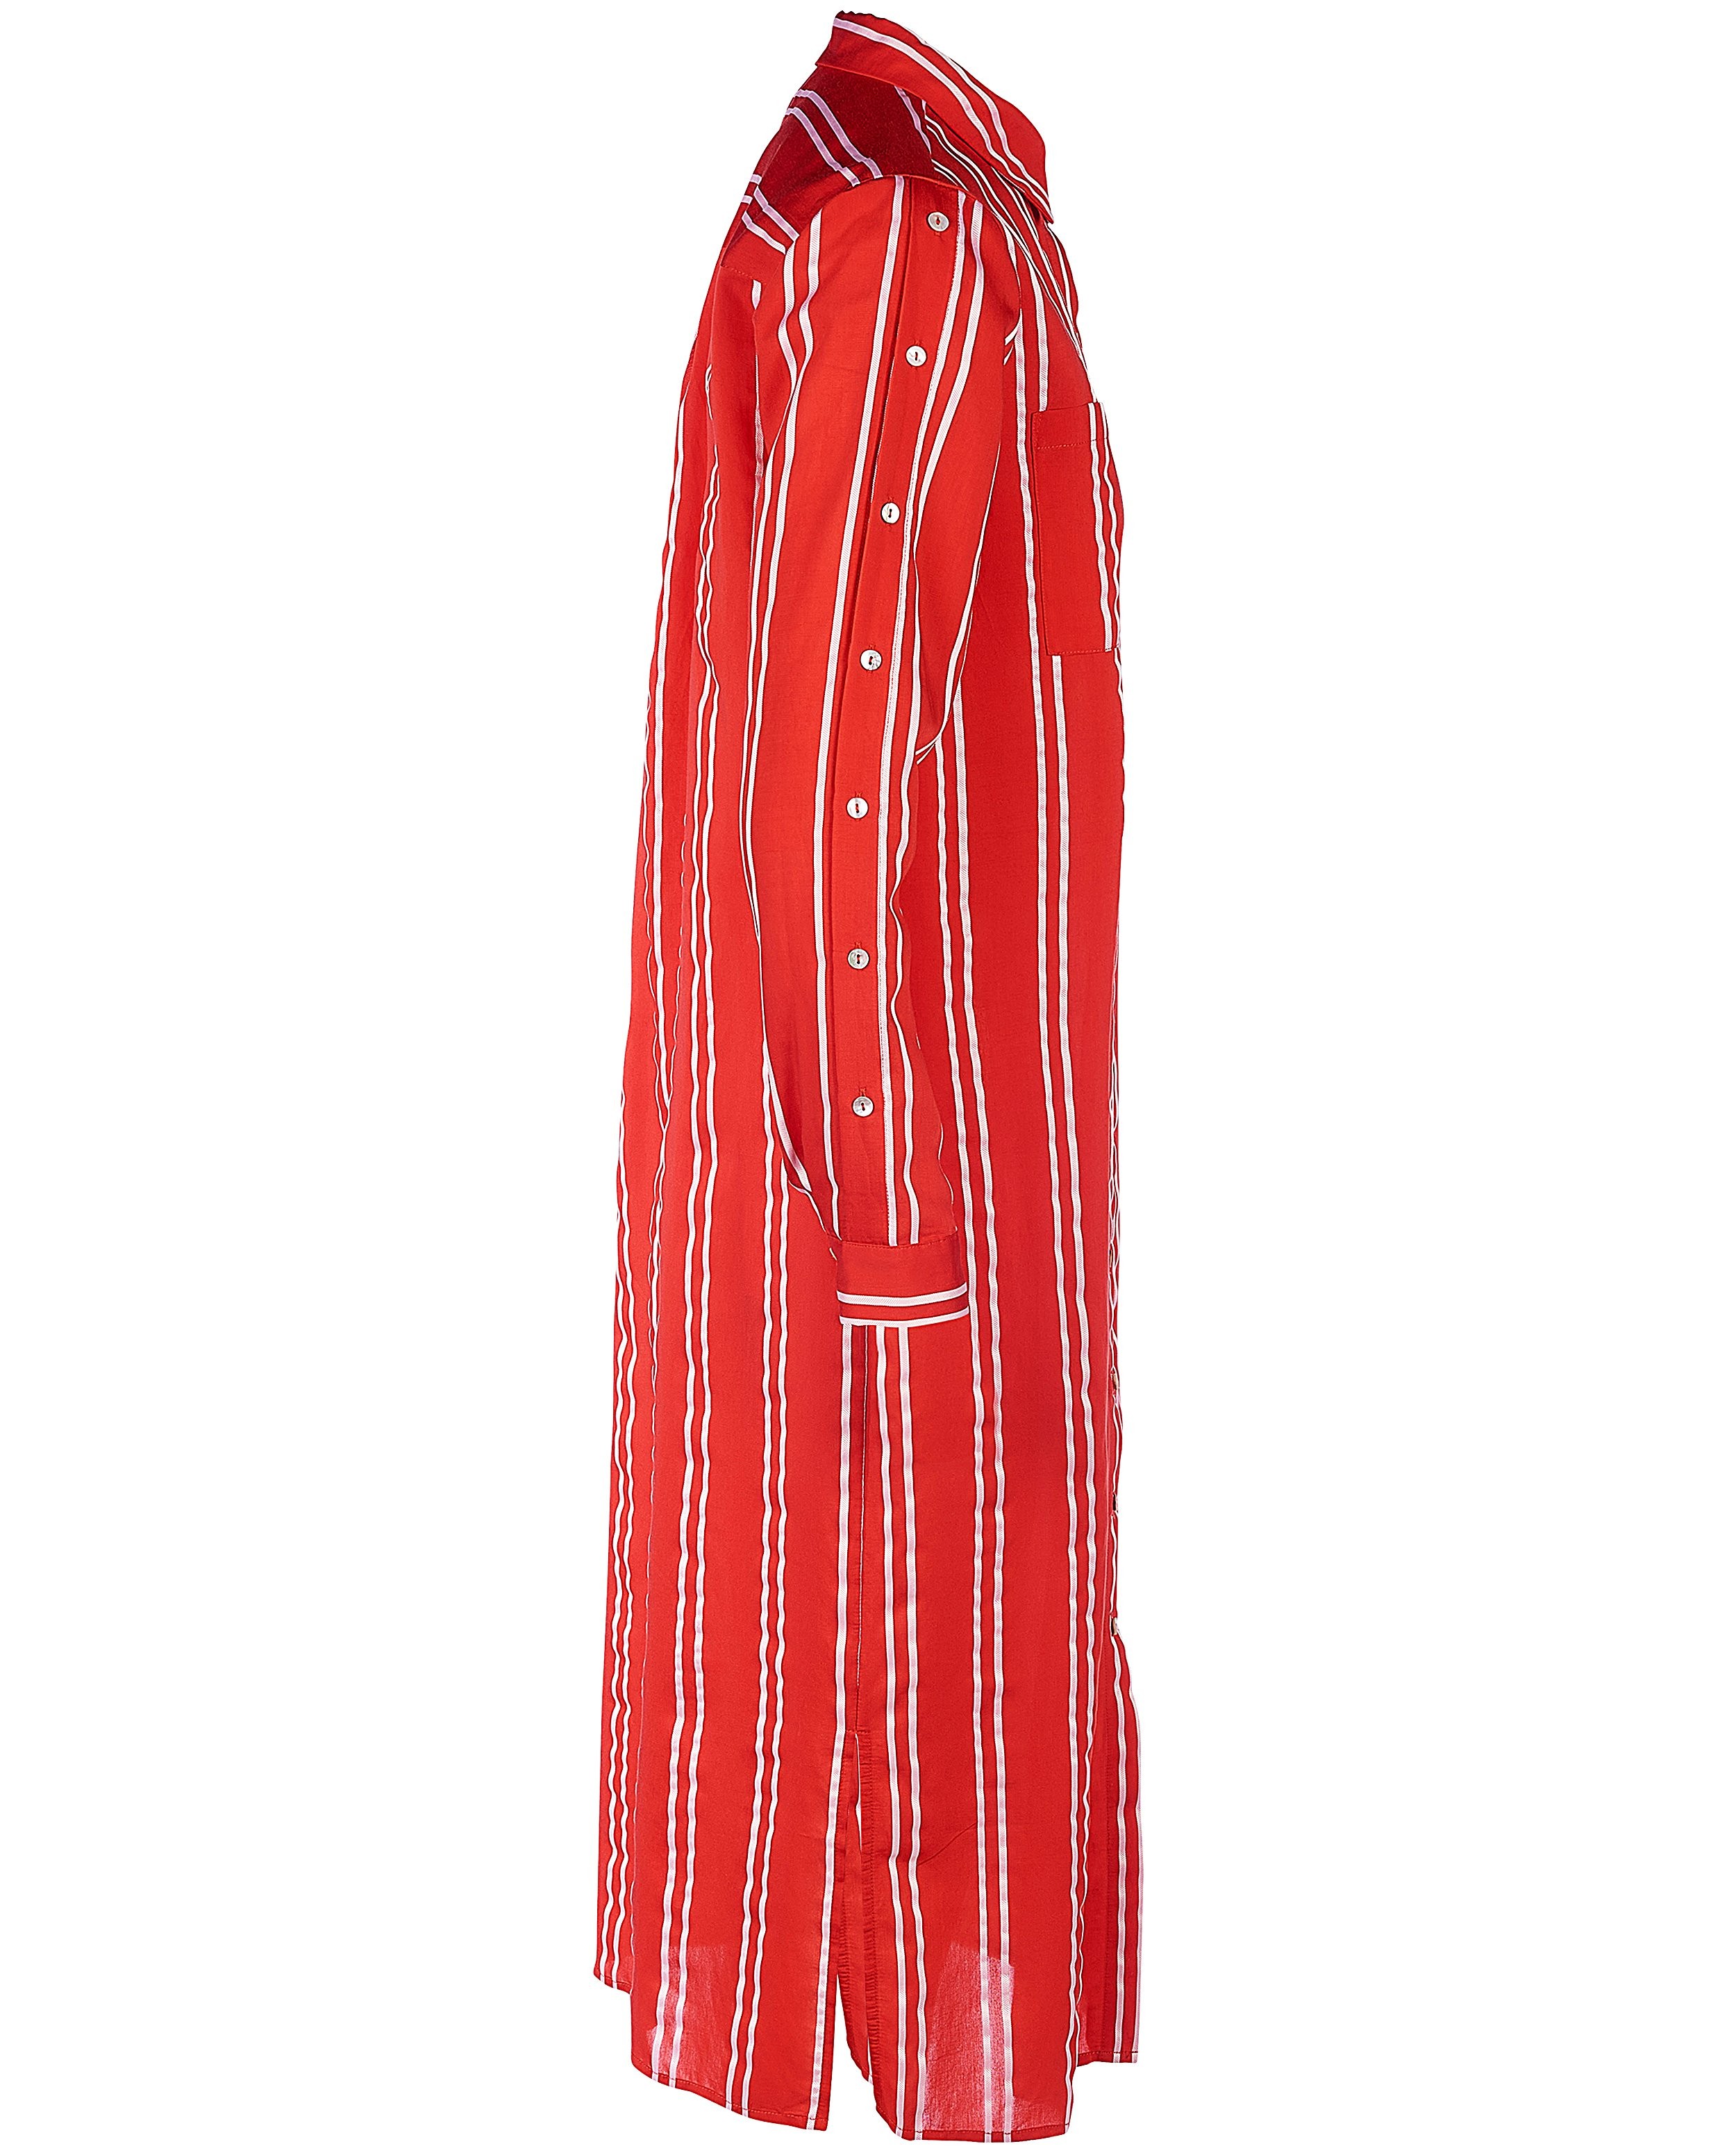 Kleedjes - Rode jurk met strepen Karen Damen